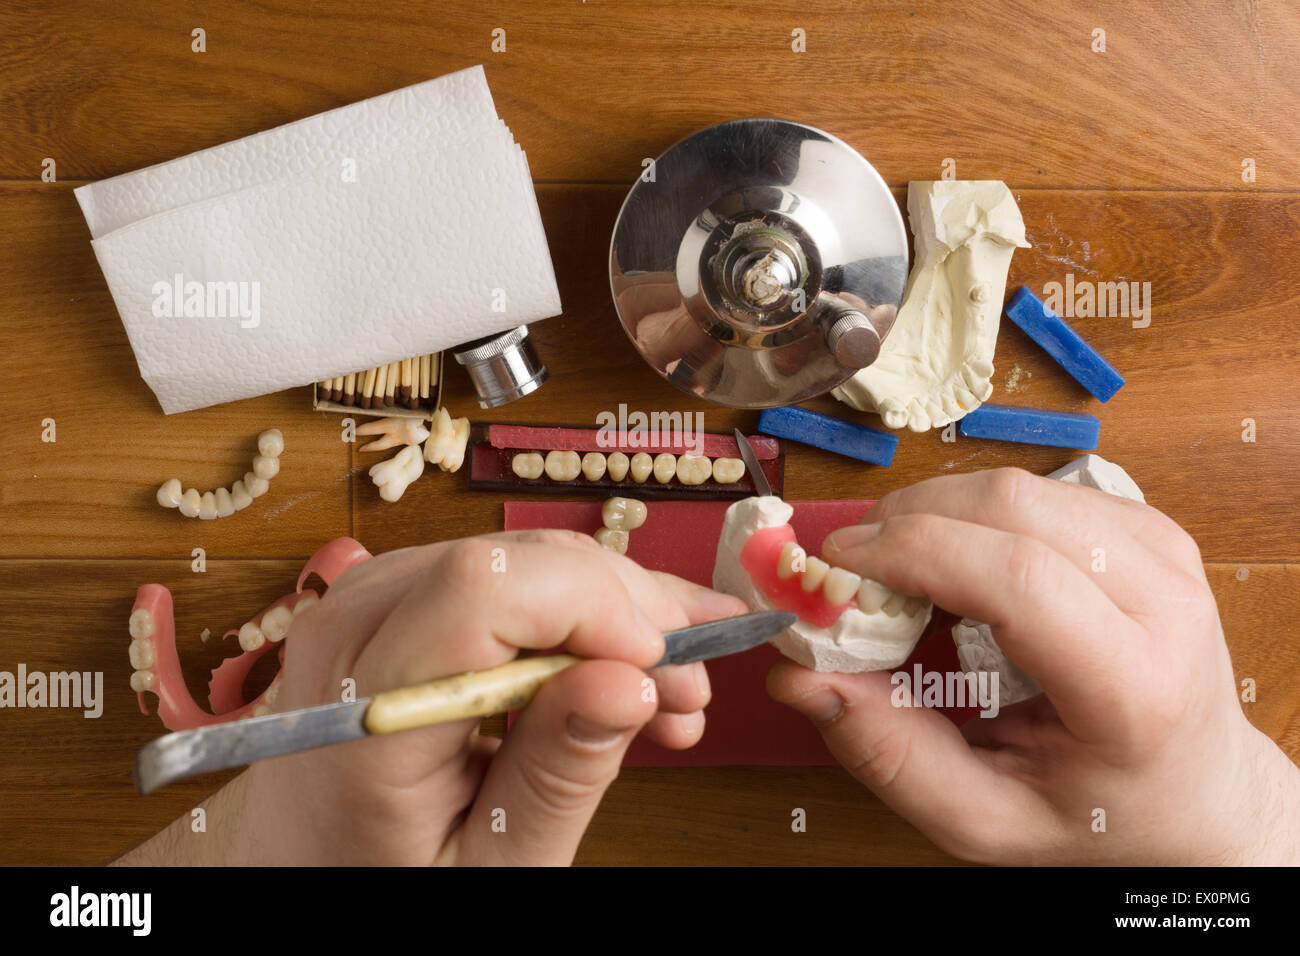 der Zahntechniker beschäftigt sich mit einer Modellierung von Zahnersatz Stockfoto